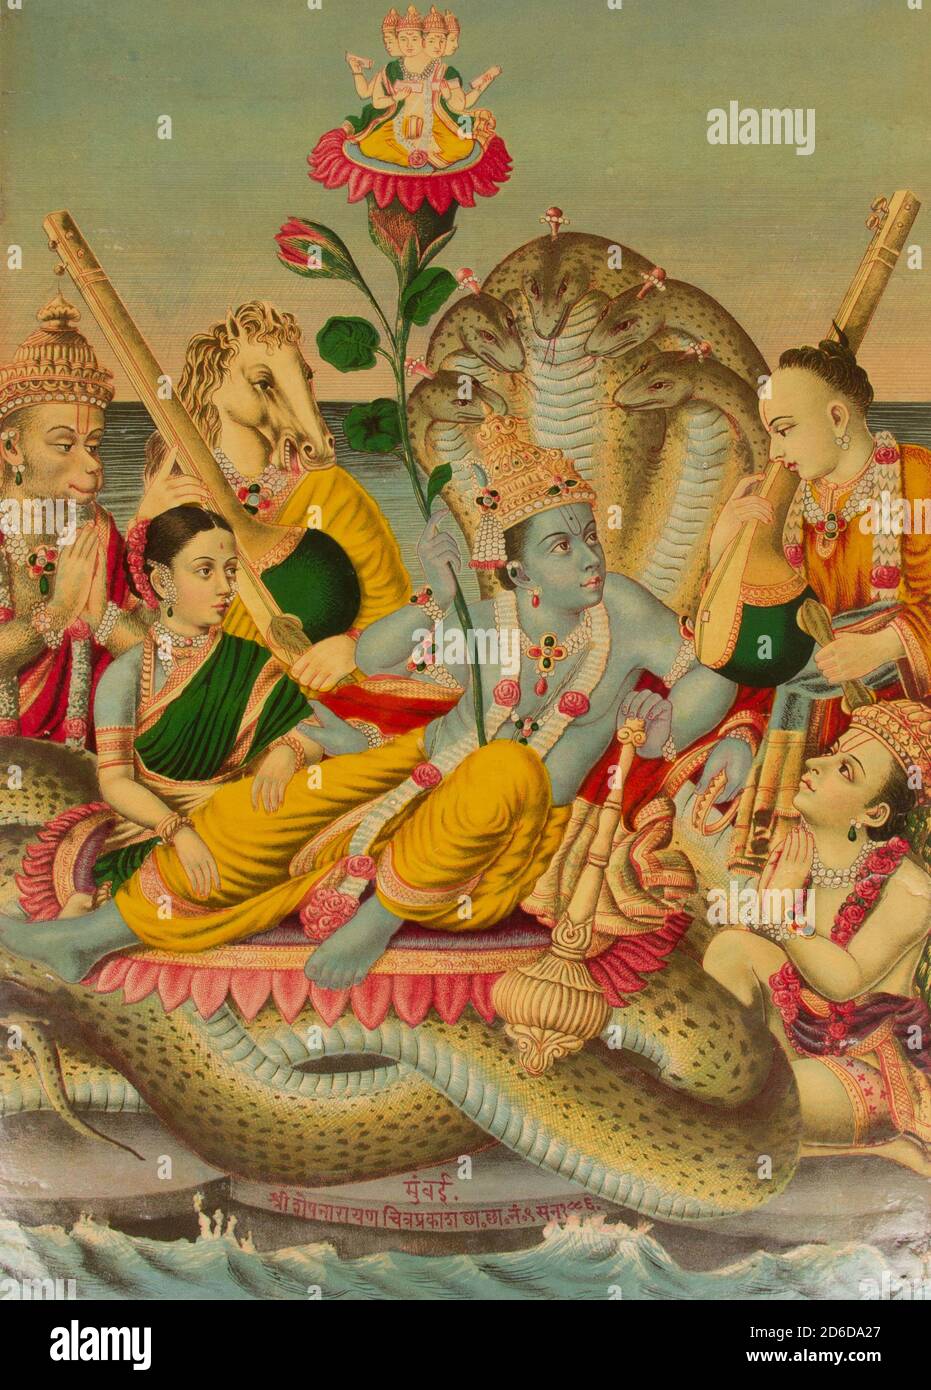 Vishnu narayana hi-res stock photography and images - Alamy